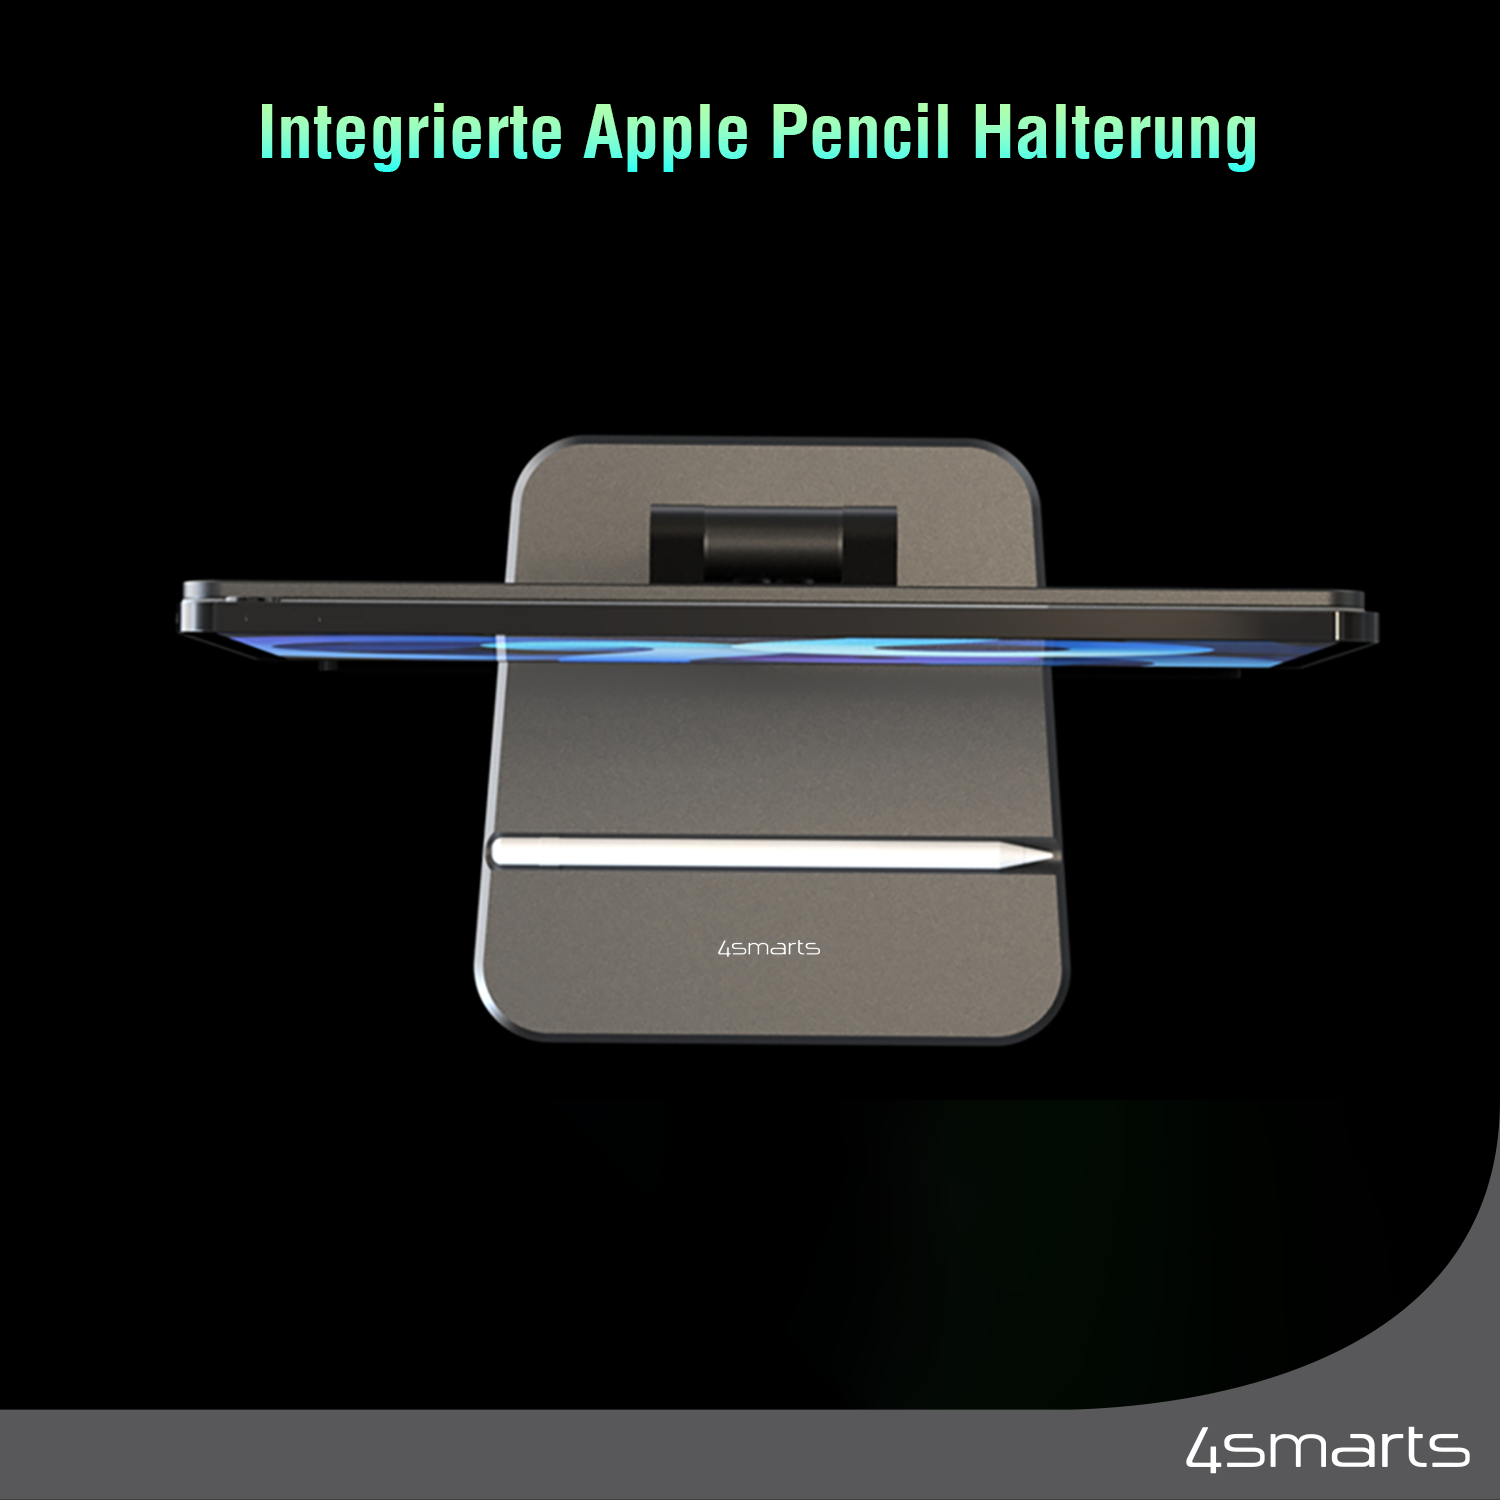 4smarts Tablet Halter für dein Apple iPad Pro 12.9 verfügt über eine integrierte Apple Pencil Halterung.